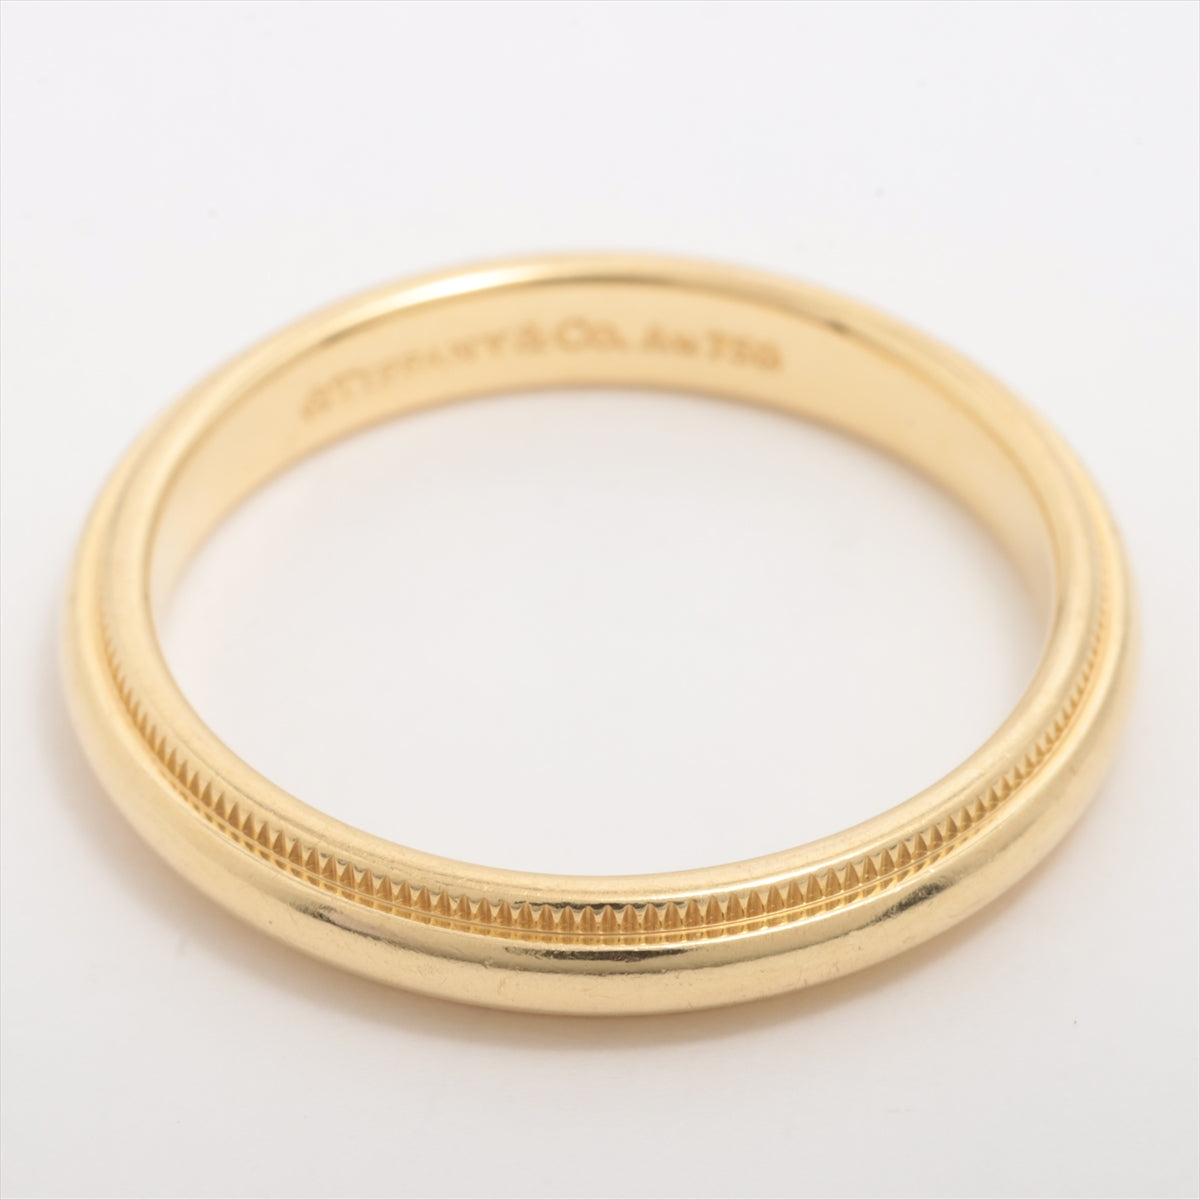 Tiffany Milgreen Band Ring 750 (YG) 4.2g